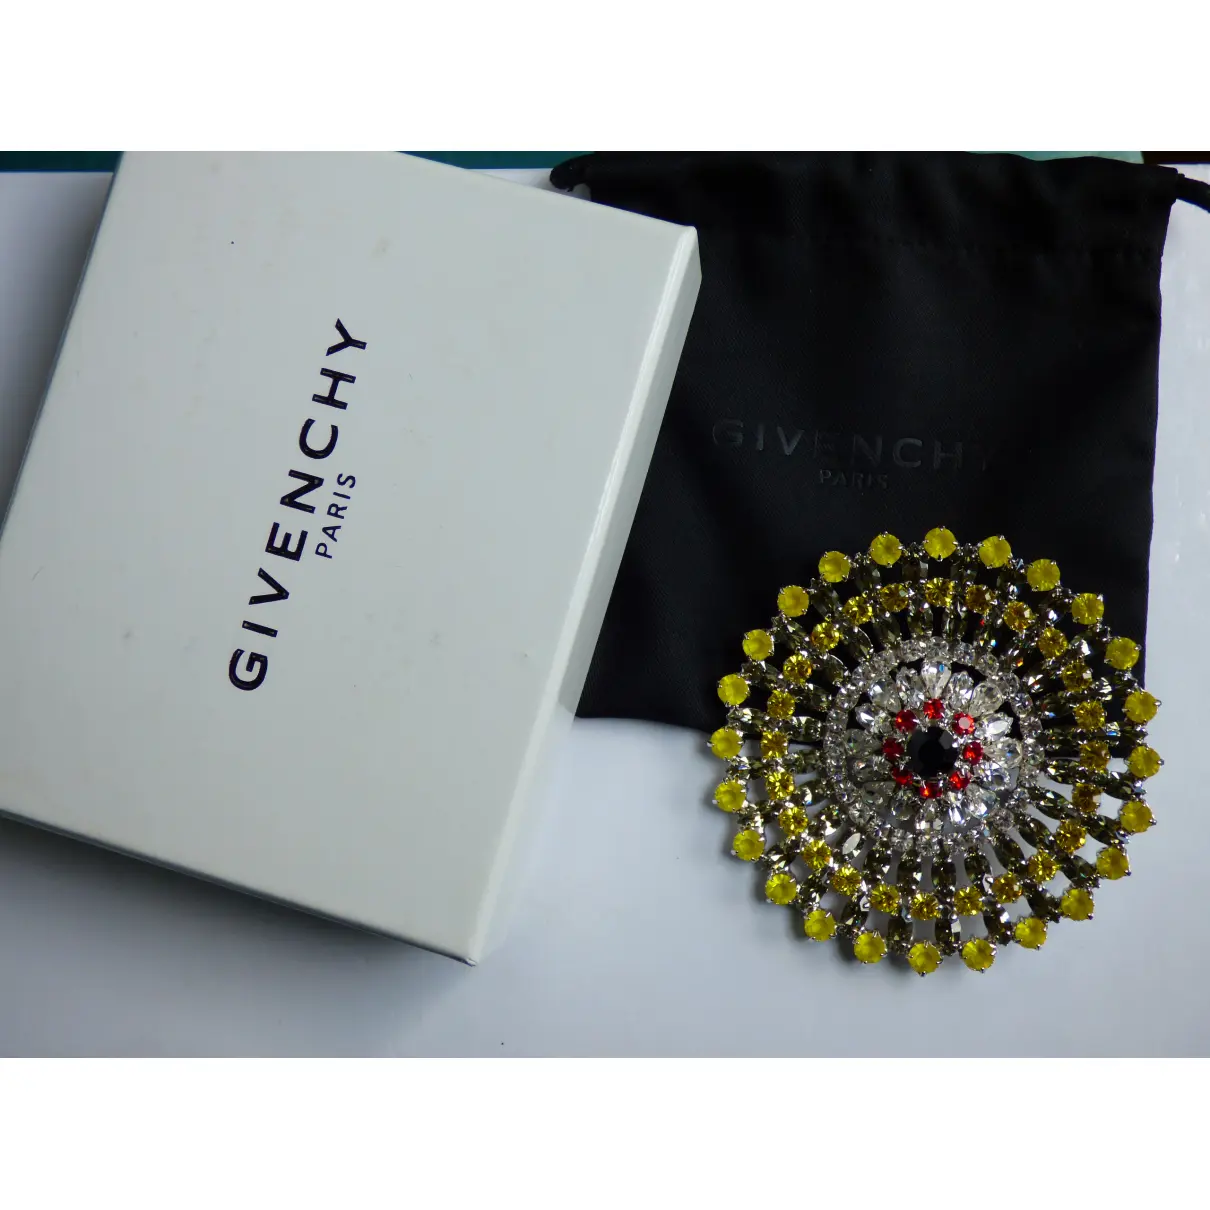 Pin & brooche Givenchy